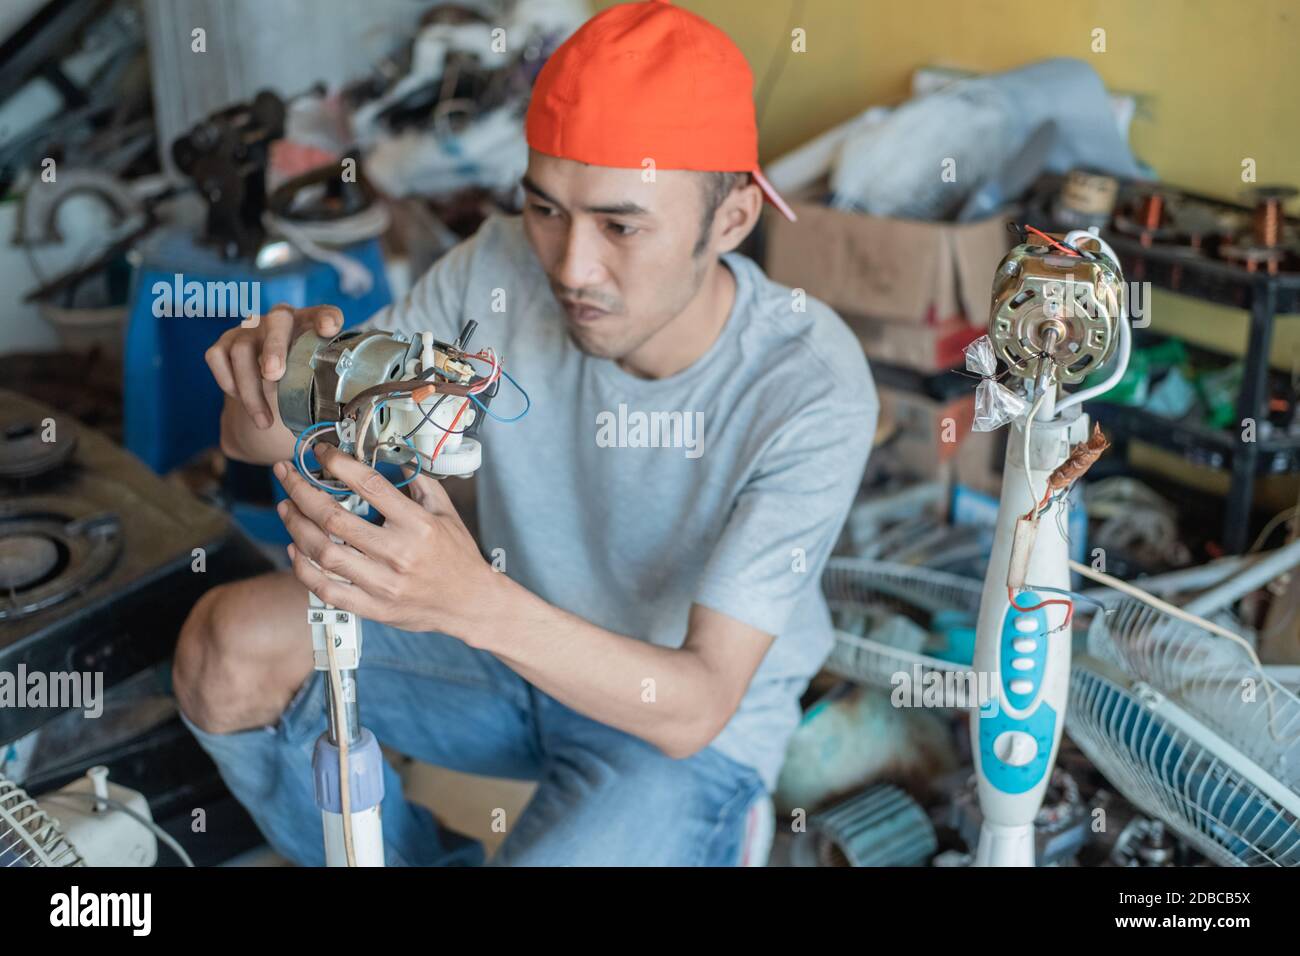 electronics repairman fixes a broken fan dynamo at an electronics repair shop Stock Photo